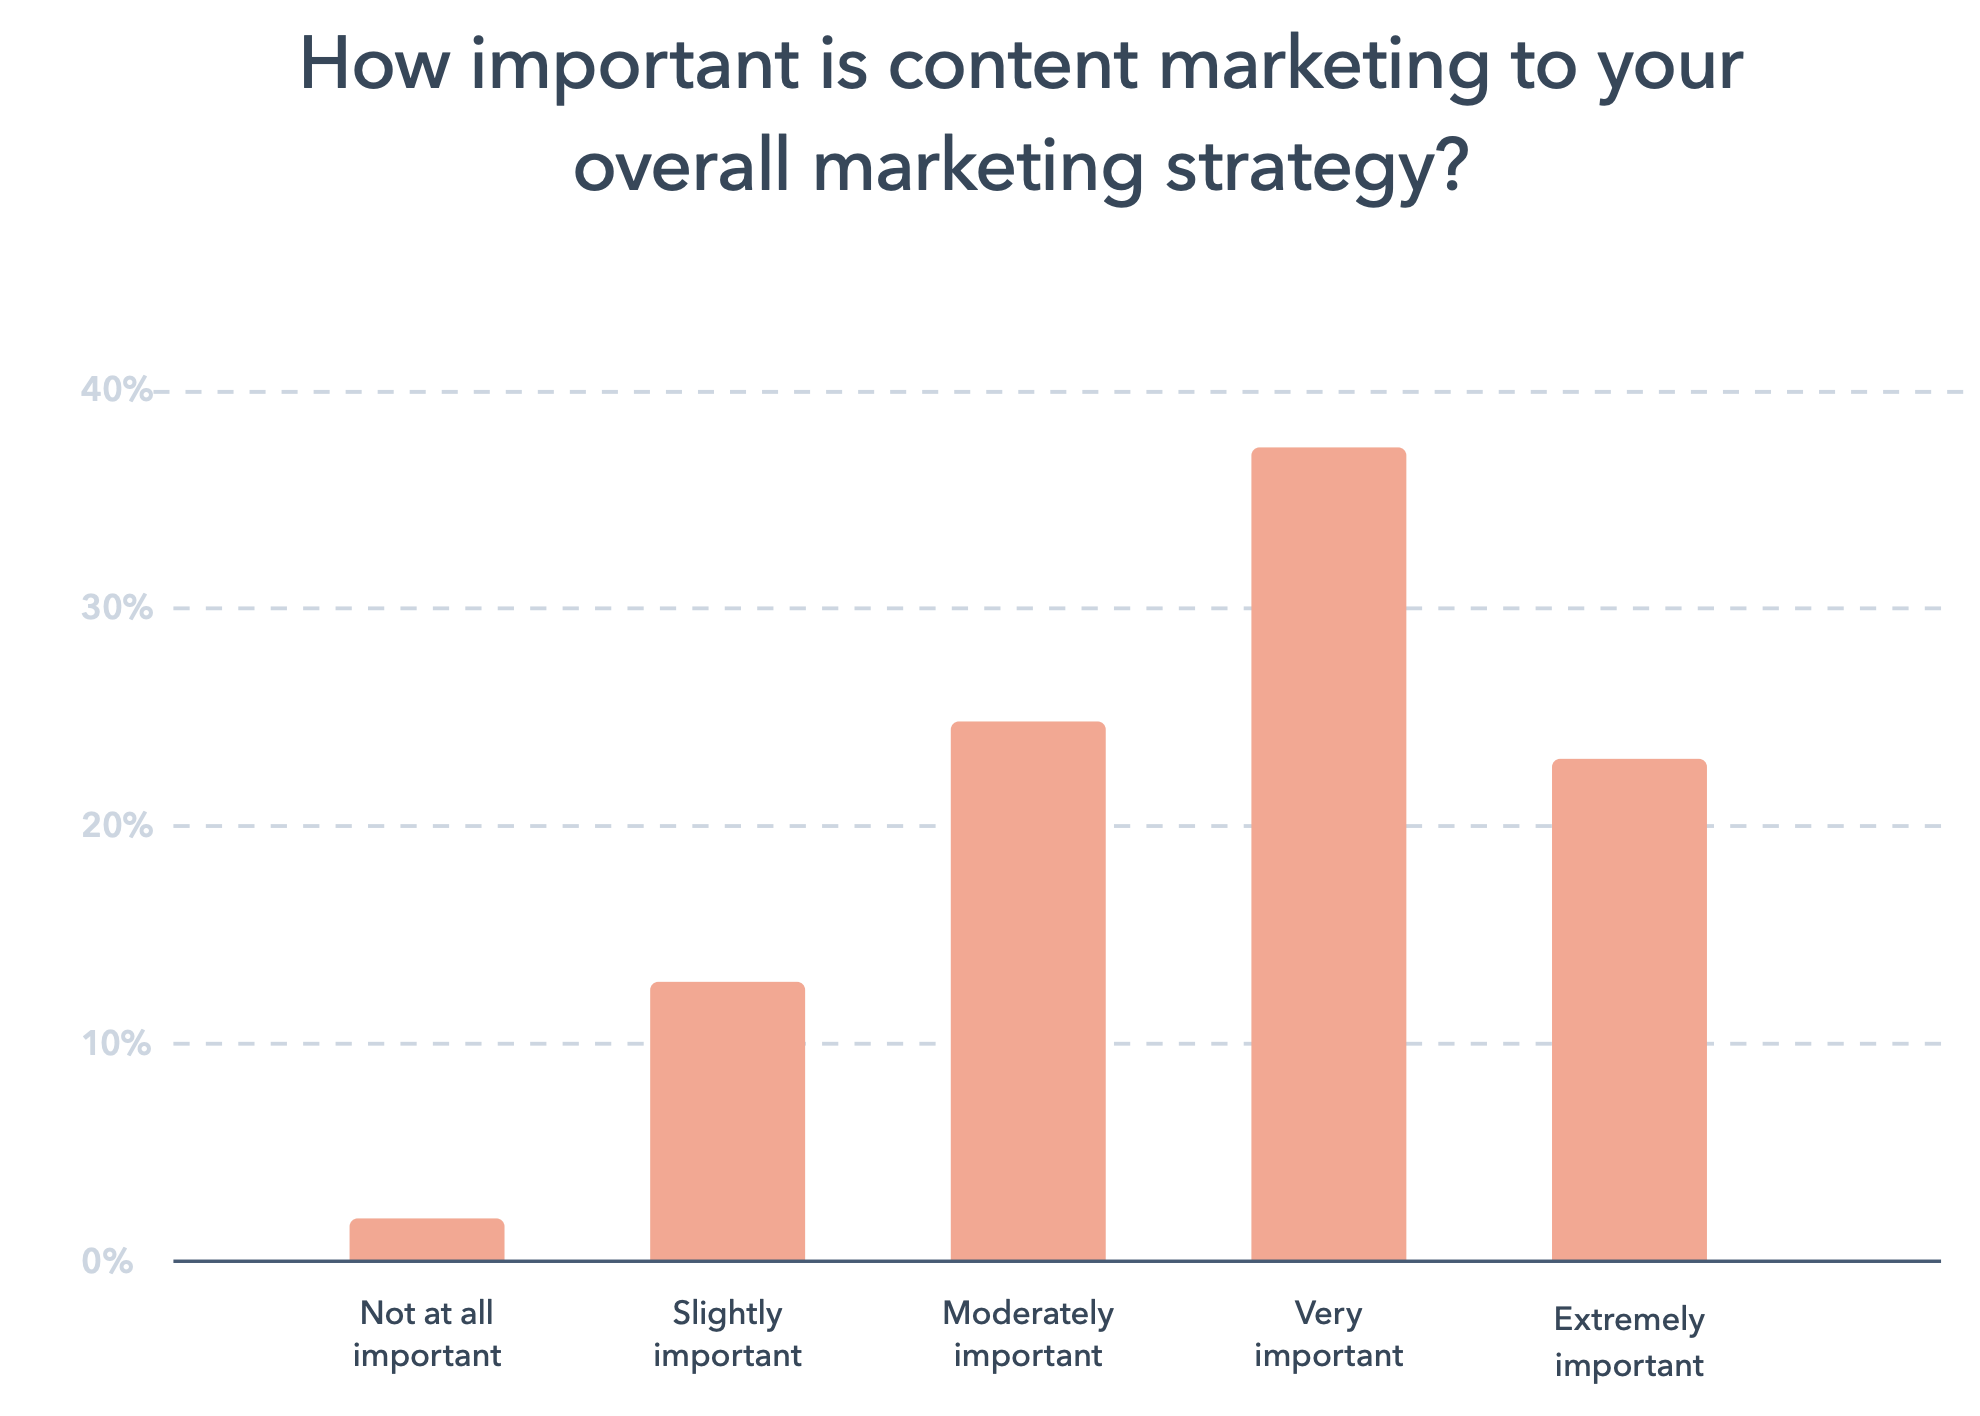 jak ważny jest content marketing dla strategii w Twojej firmie - Marketingowe trendy 2022